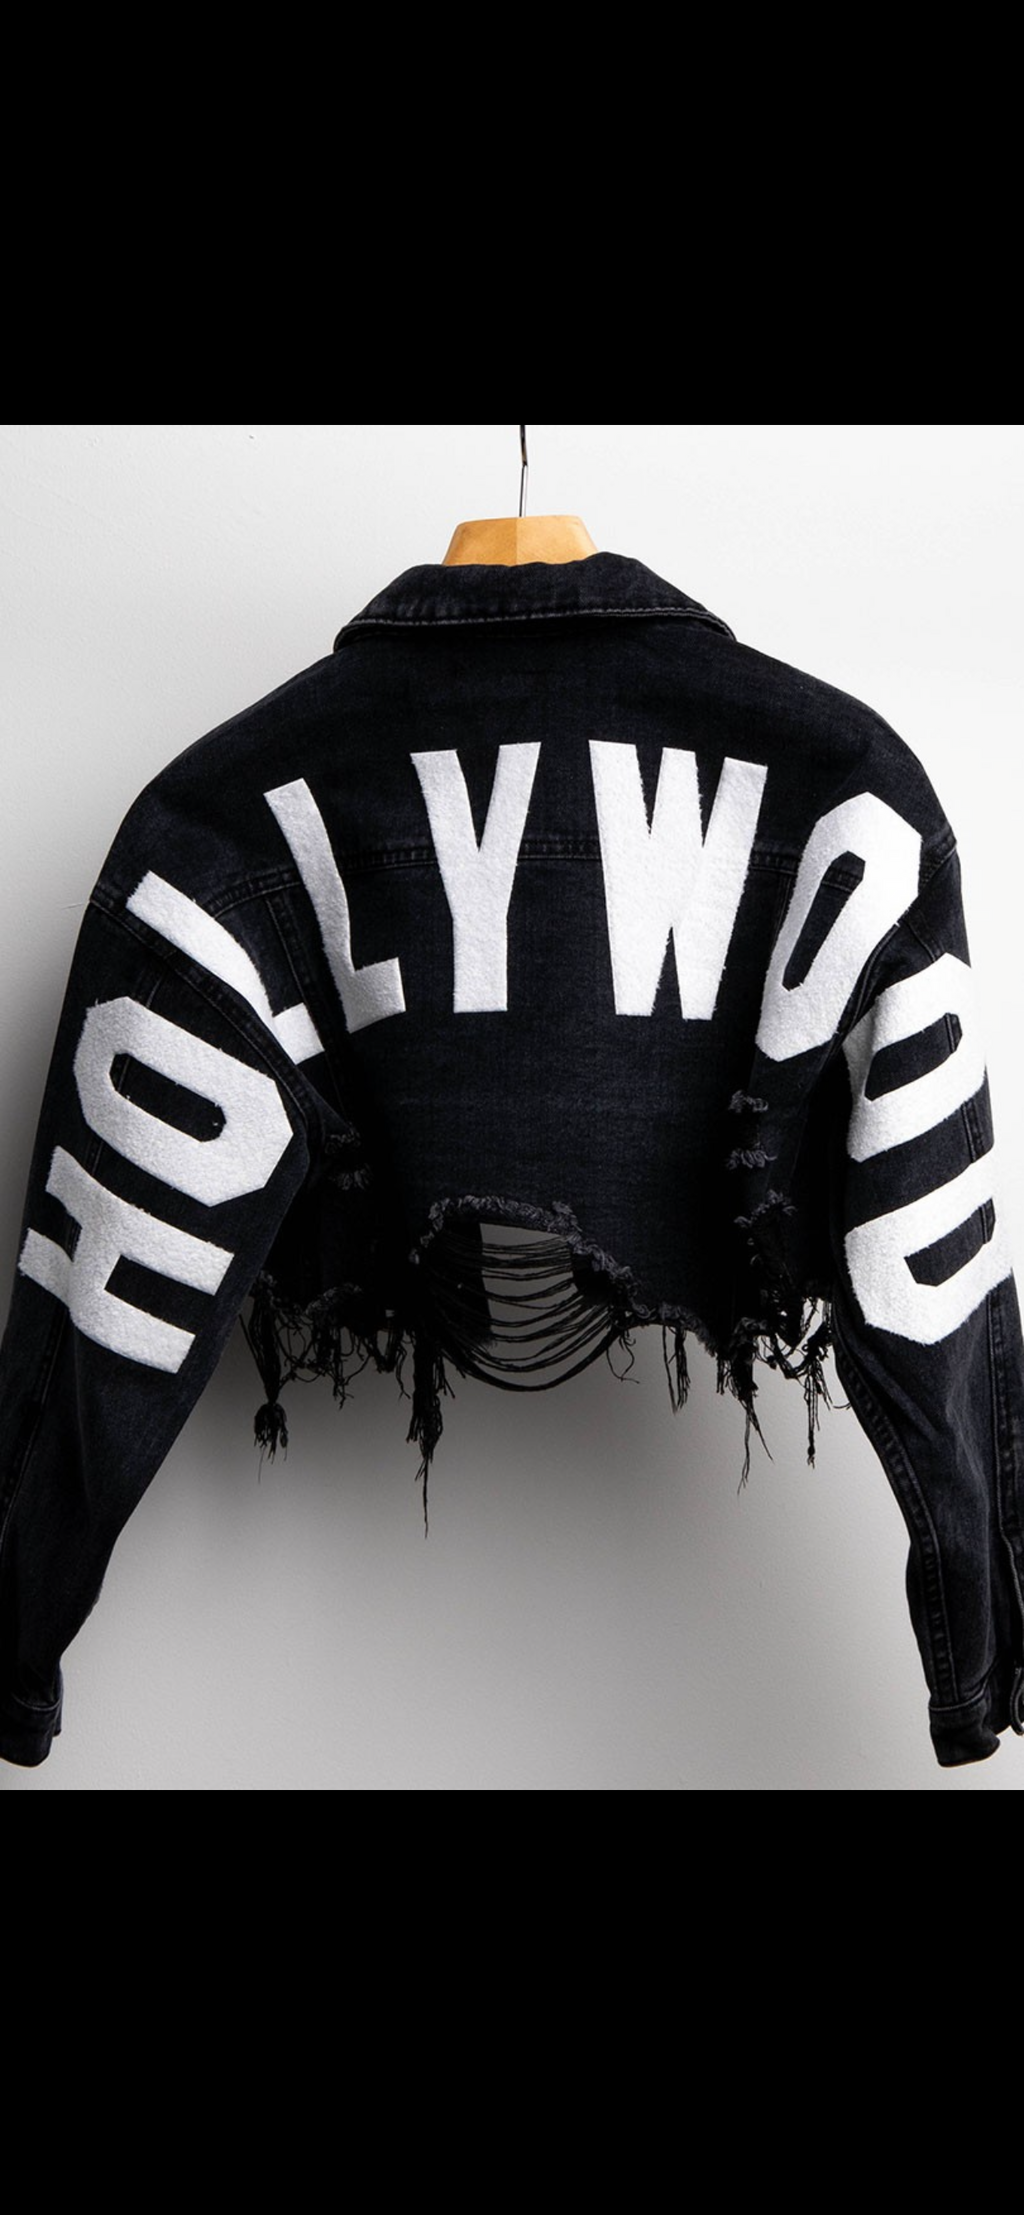 Hollywood cropped jacket